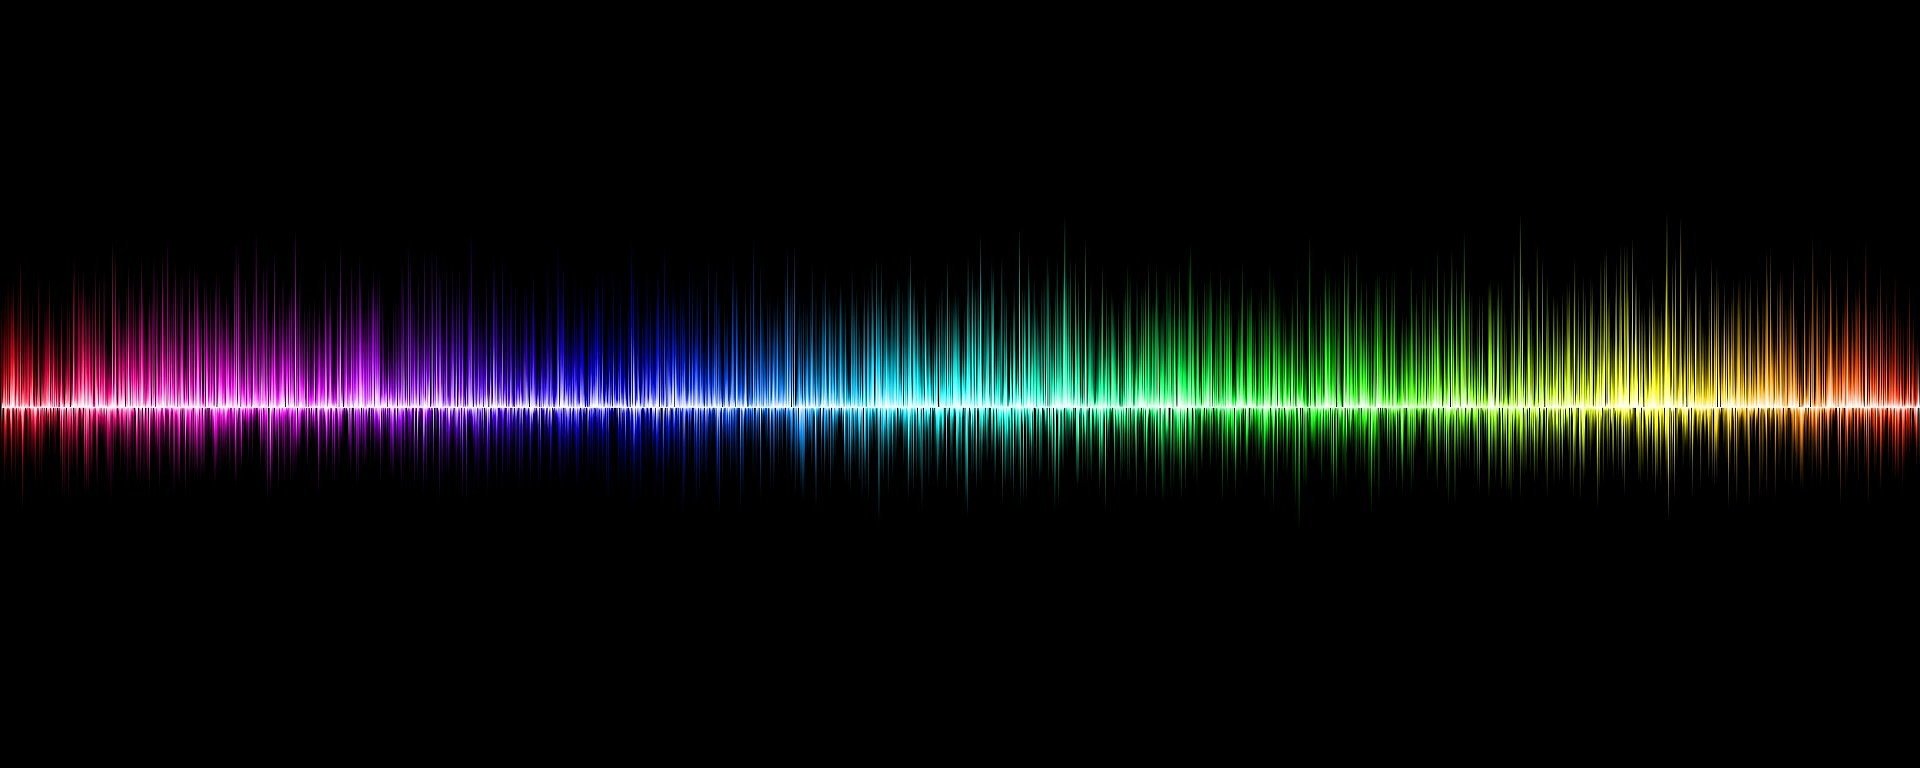 Surgiram novas evidências de que o som ainda move a massa